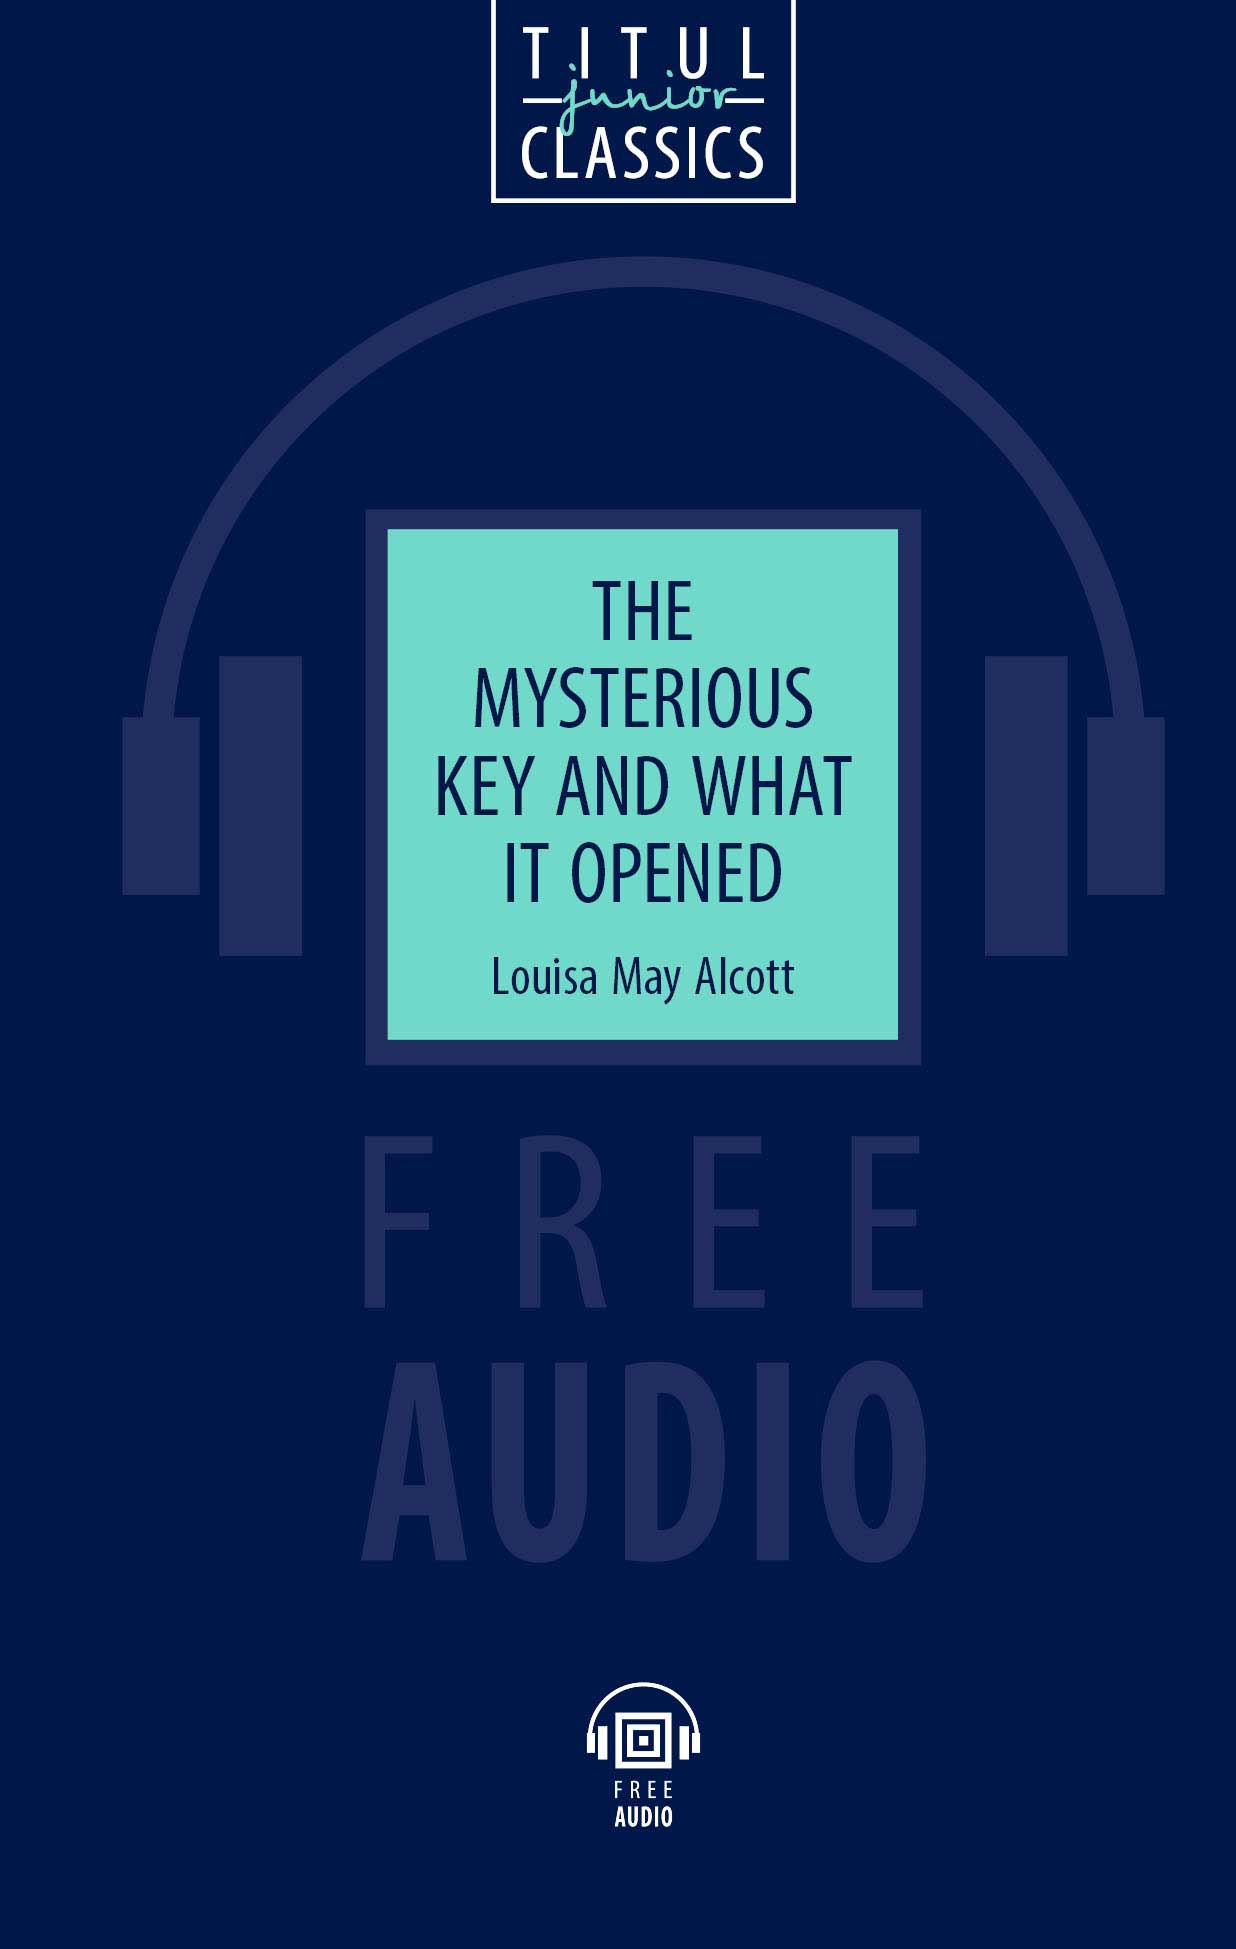 Луиза Мэй Олкотт / Louisa May Alcott. Книга для чтения. Таинственный ключ и что он открыл / The Mysterious Key and What it Opened. QR-код для аудио. Английский язык